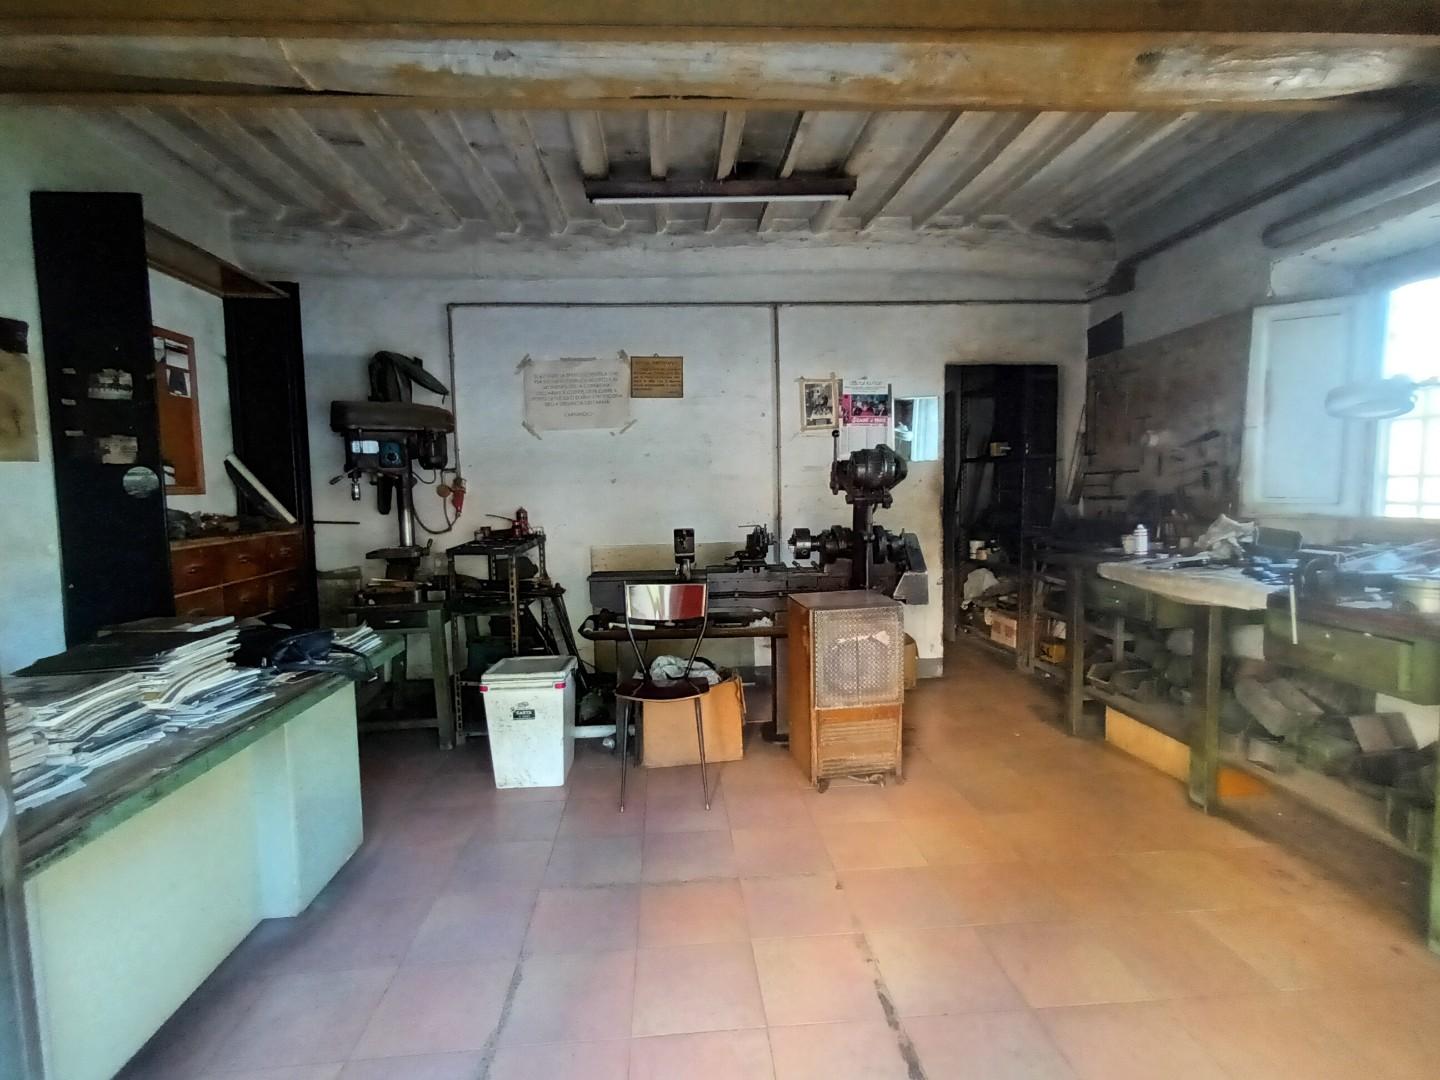 Laboratorio in vendita a Lucca, 2 locali, prezzo € 55.000 | PortaleAgenzieImmobiliari.it